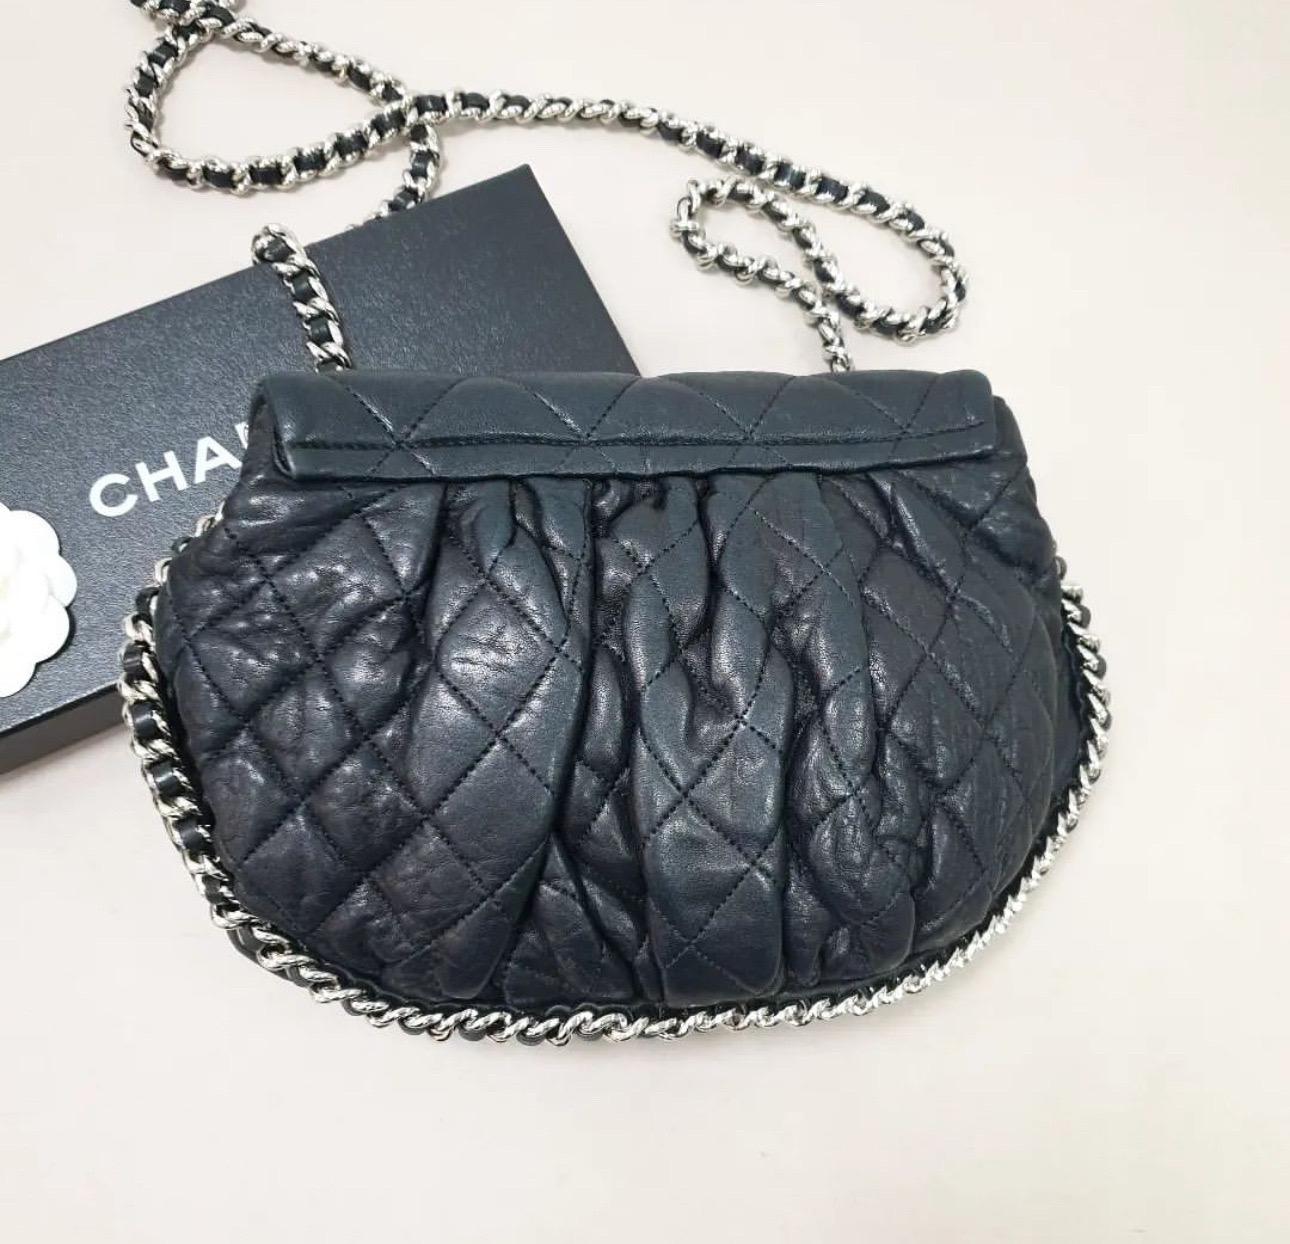 Chanel Große Tasche mit Kette umklappbar für Damen oder Herren